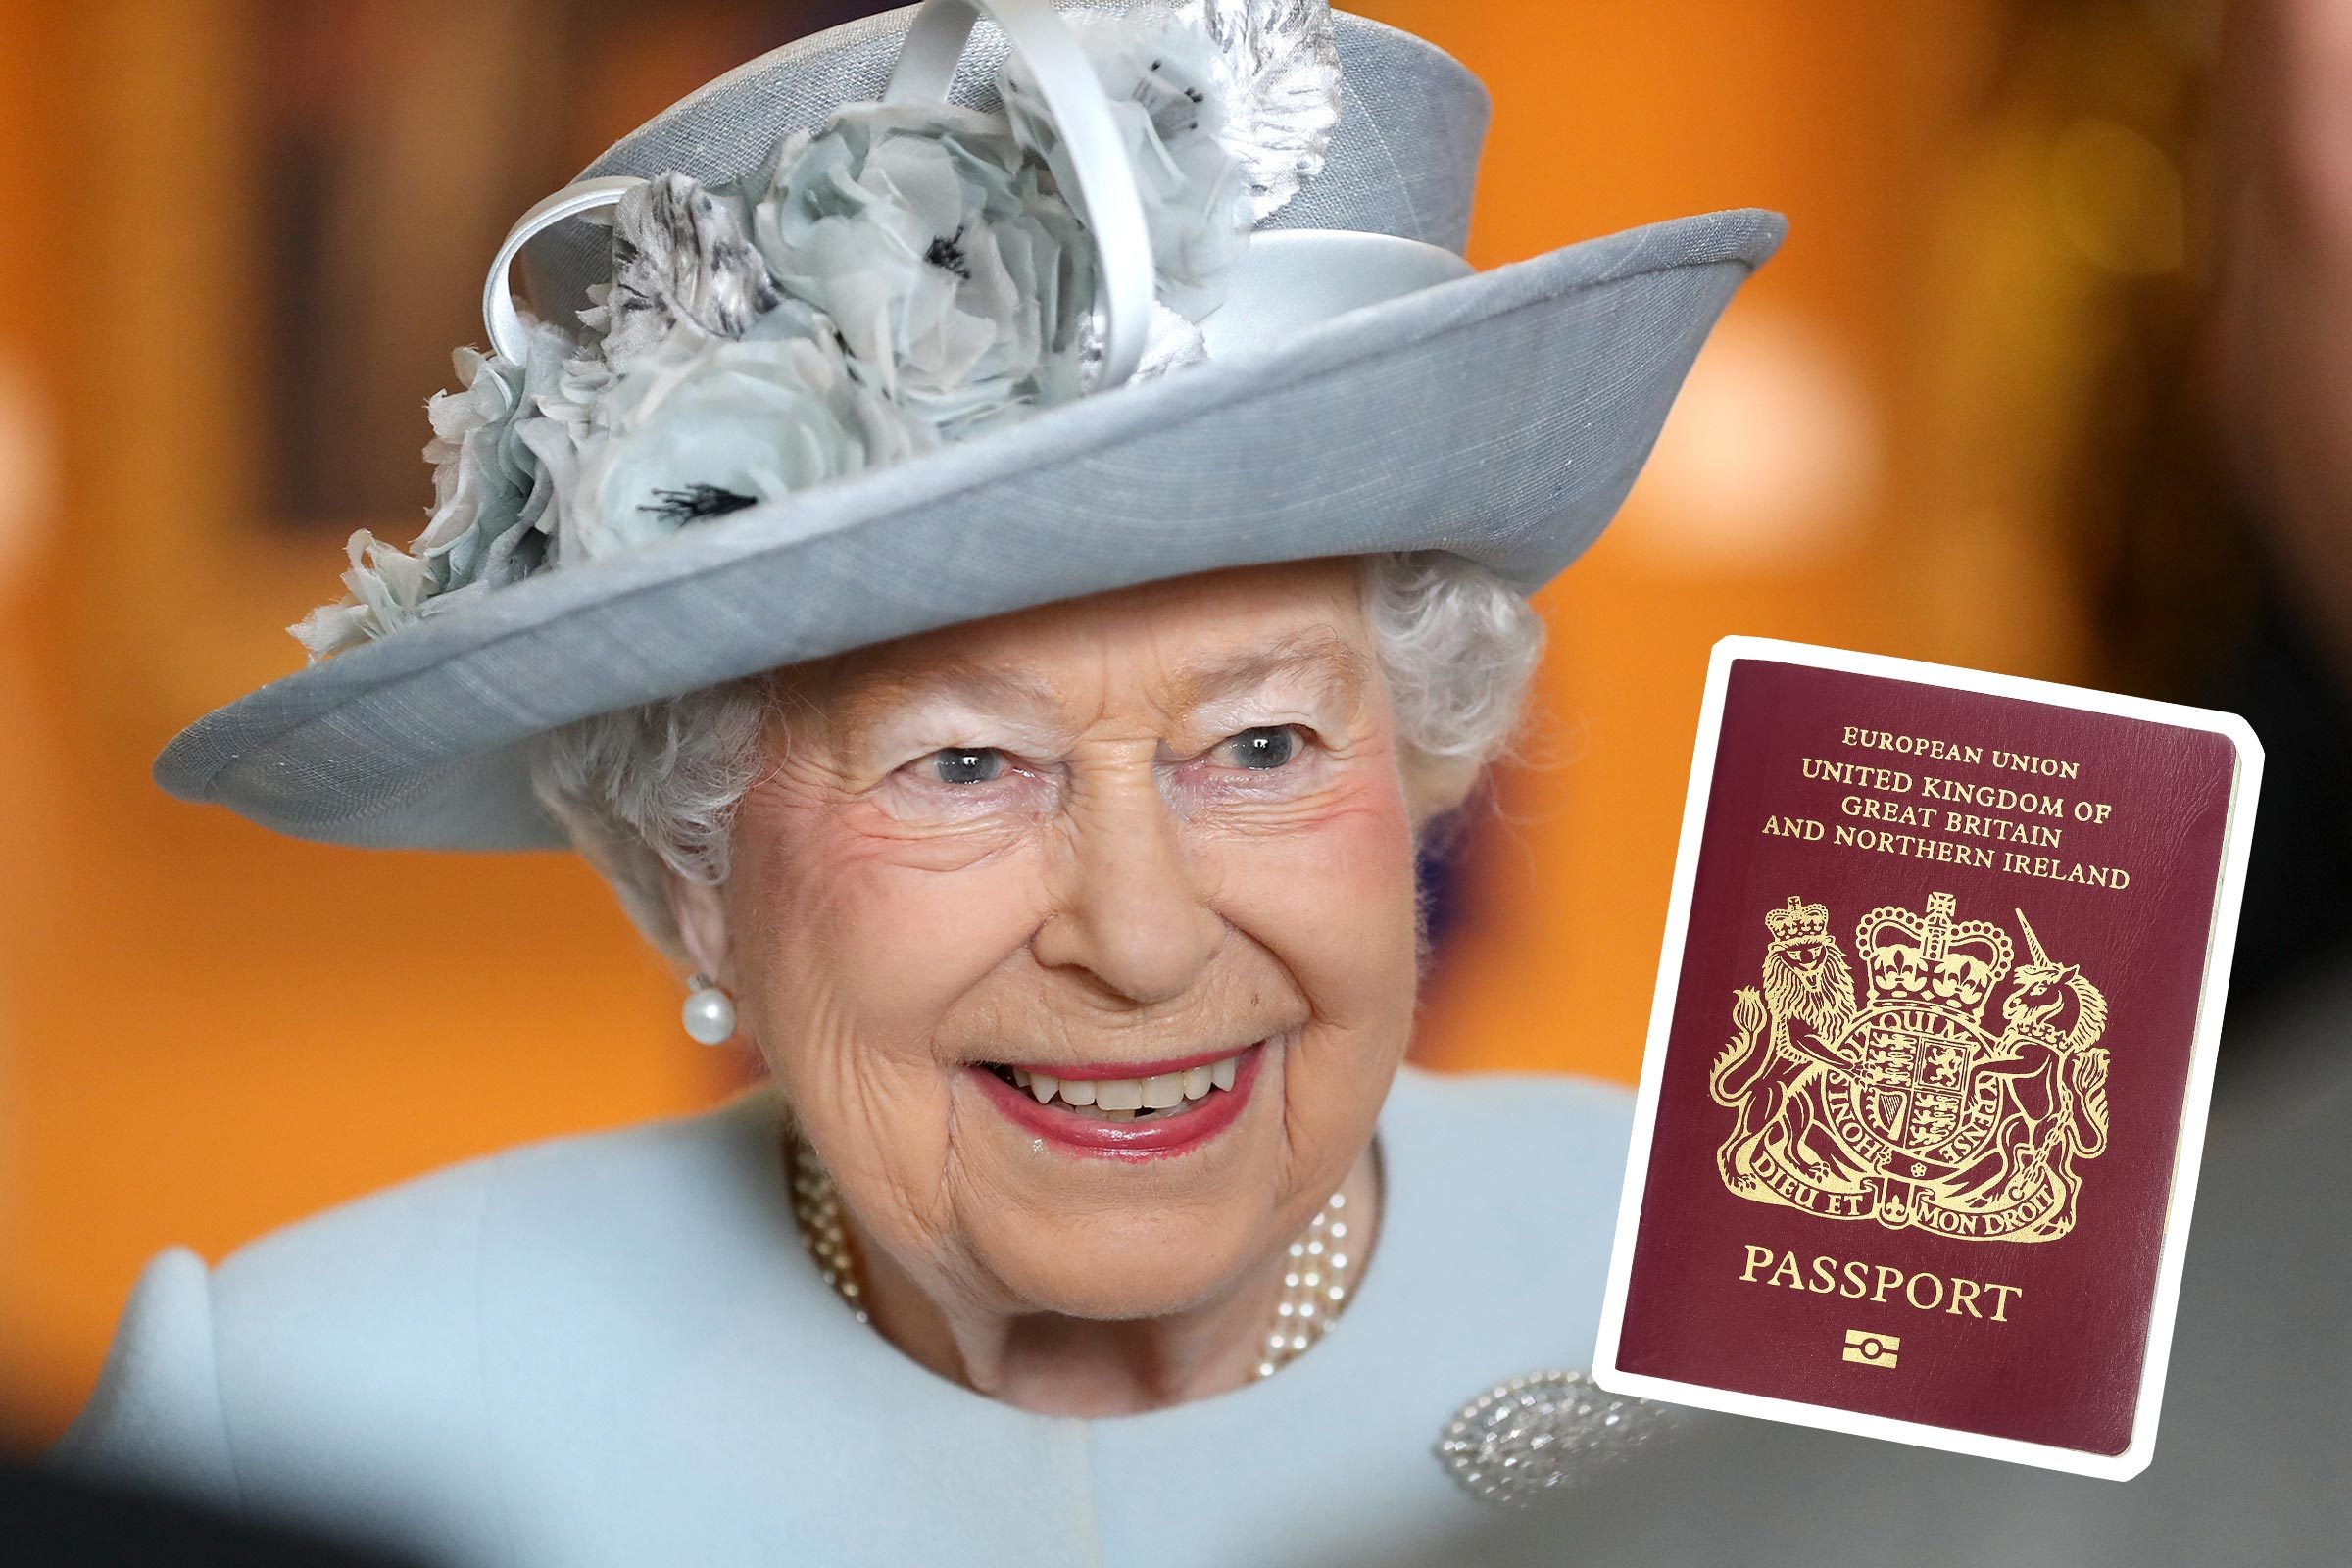 8 Hukum Inggris yang Tidak Harus Diikuti Ratu Elizabeth 